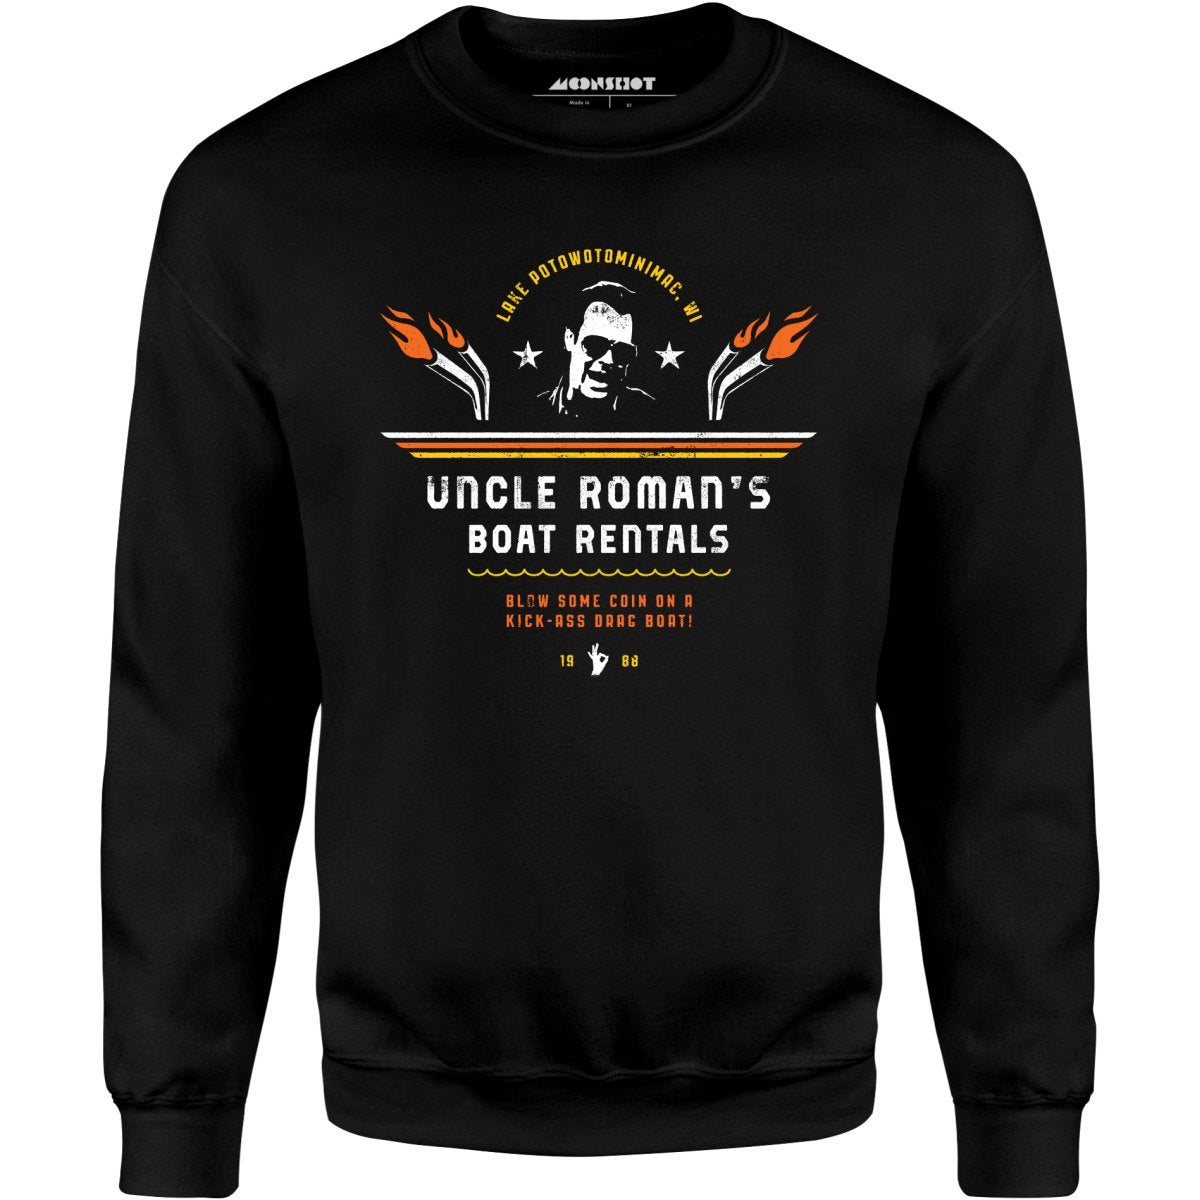 Uncle Roman's Boat Rentals - Unisex Sweatshirt